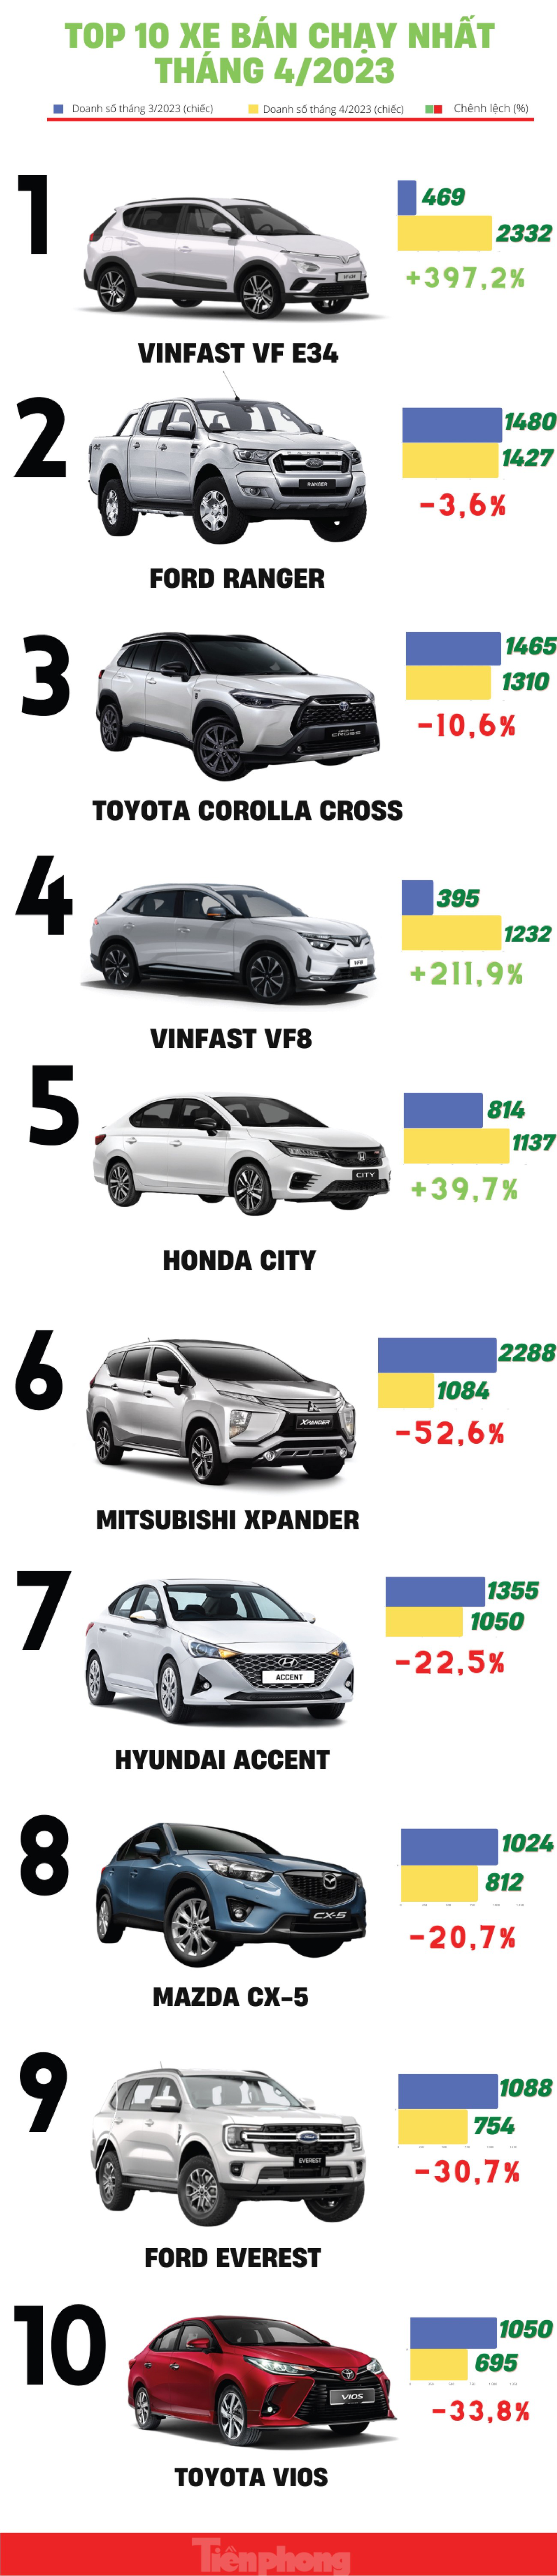 Top 10 xe bán chạy nhất tháng 4 tại Việt Nam - Ảnh 1.